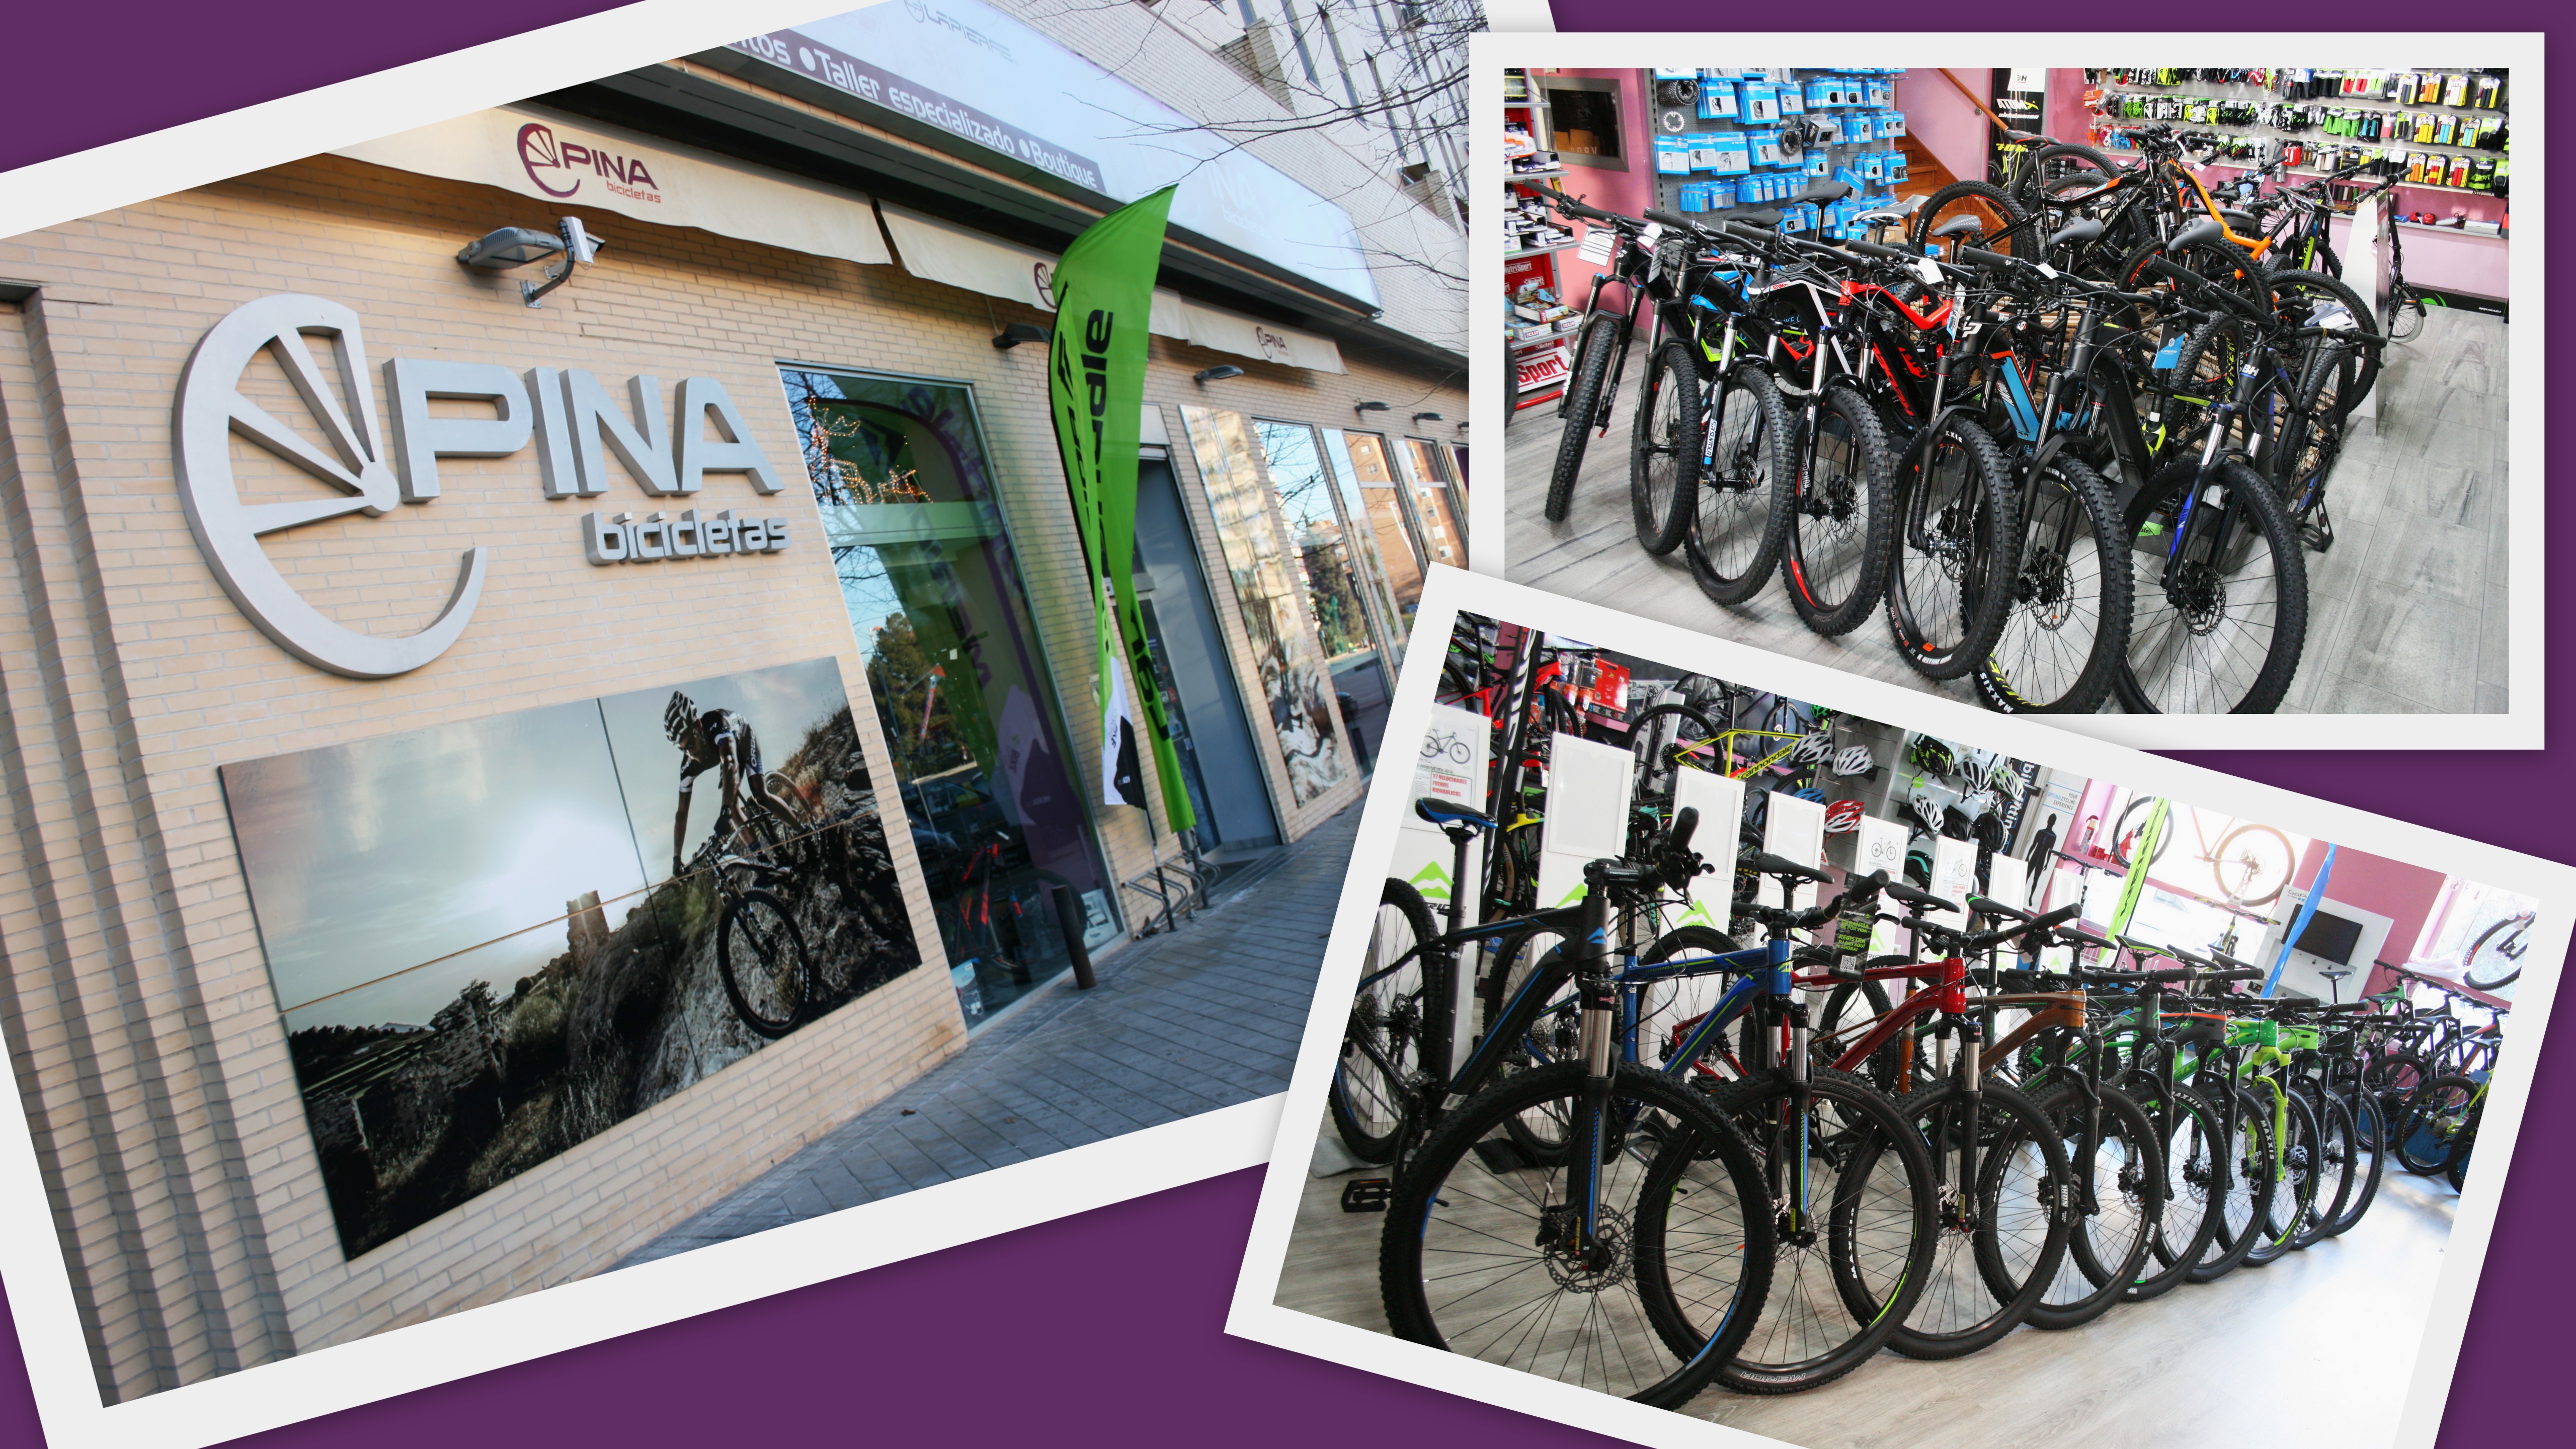 Contento saber único Alquiler de Bicicletas en Toledo - Bicispina.com